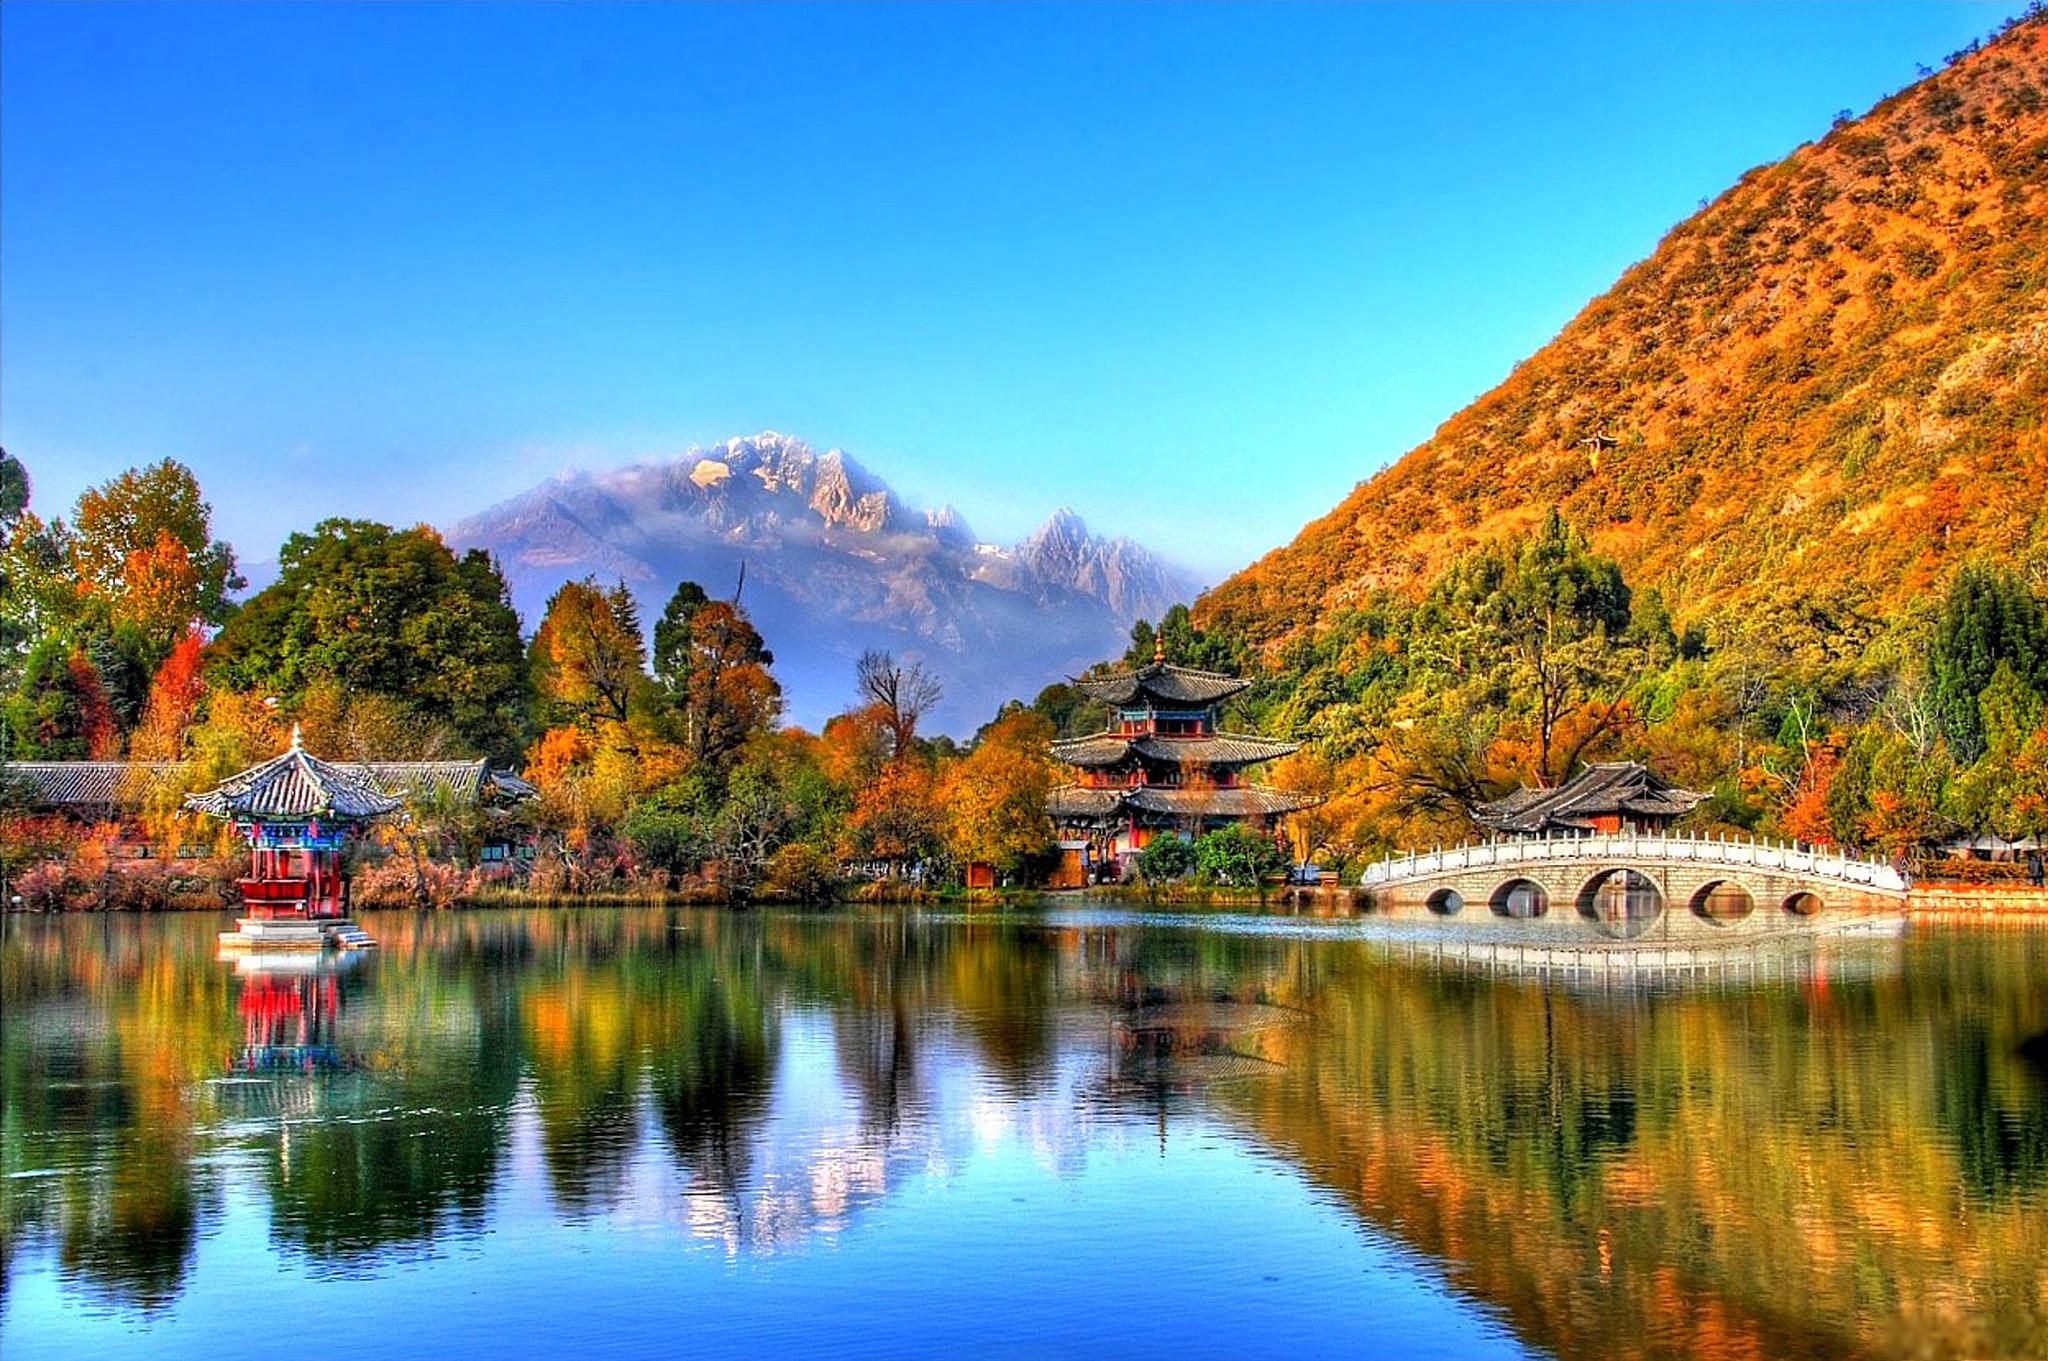 云南旅游景点推荐 云南,位于中国的西南部,是一个以其丰富的自然景观